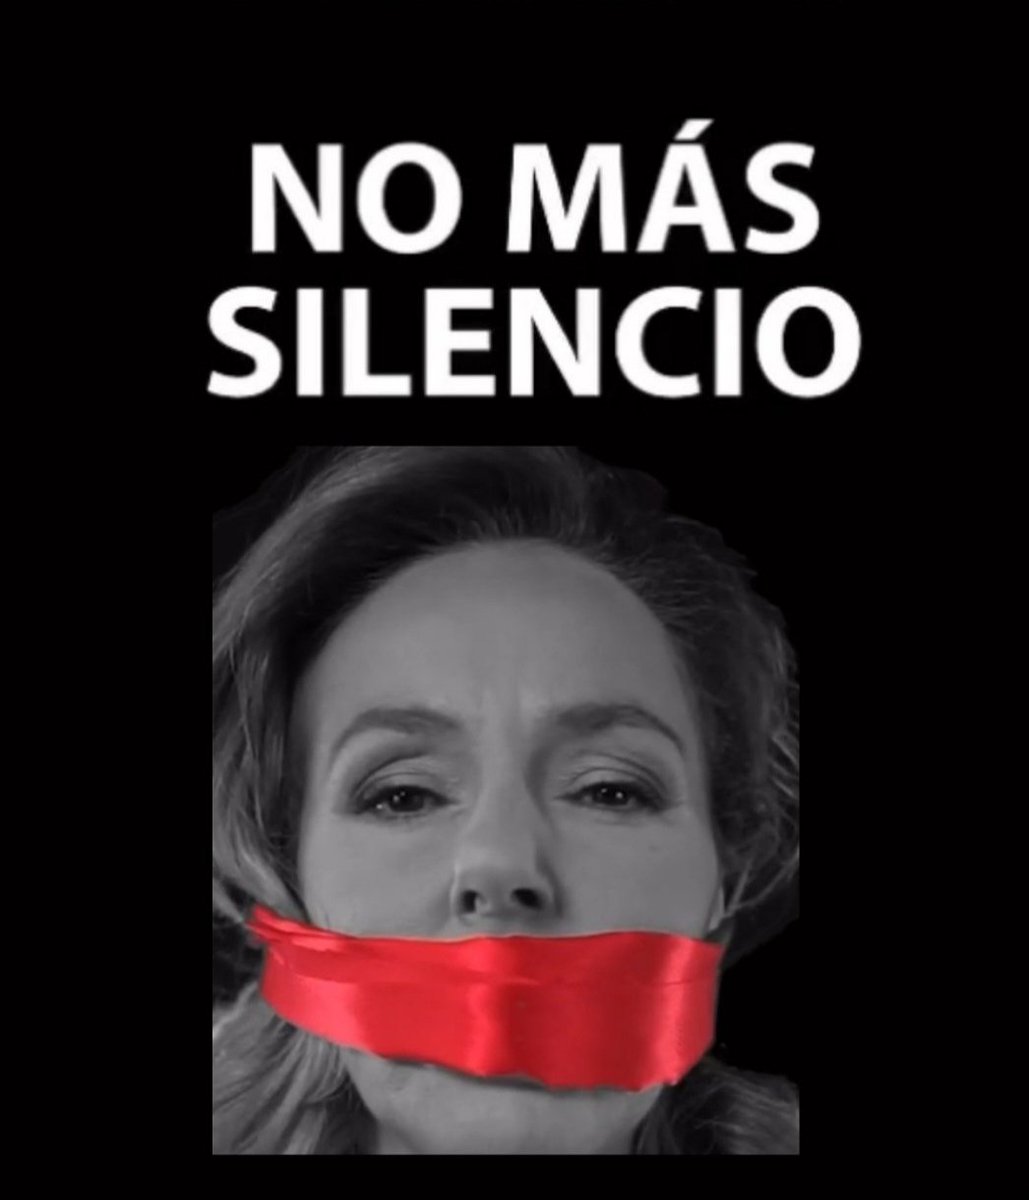 @RosadoCandon @salmantino_41 #ADMALTRATADOR 
#APOYOROCIO11A